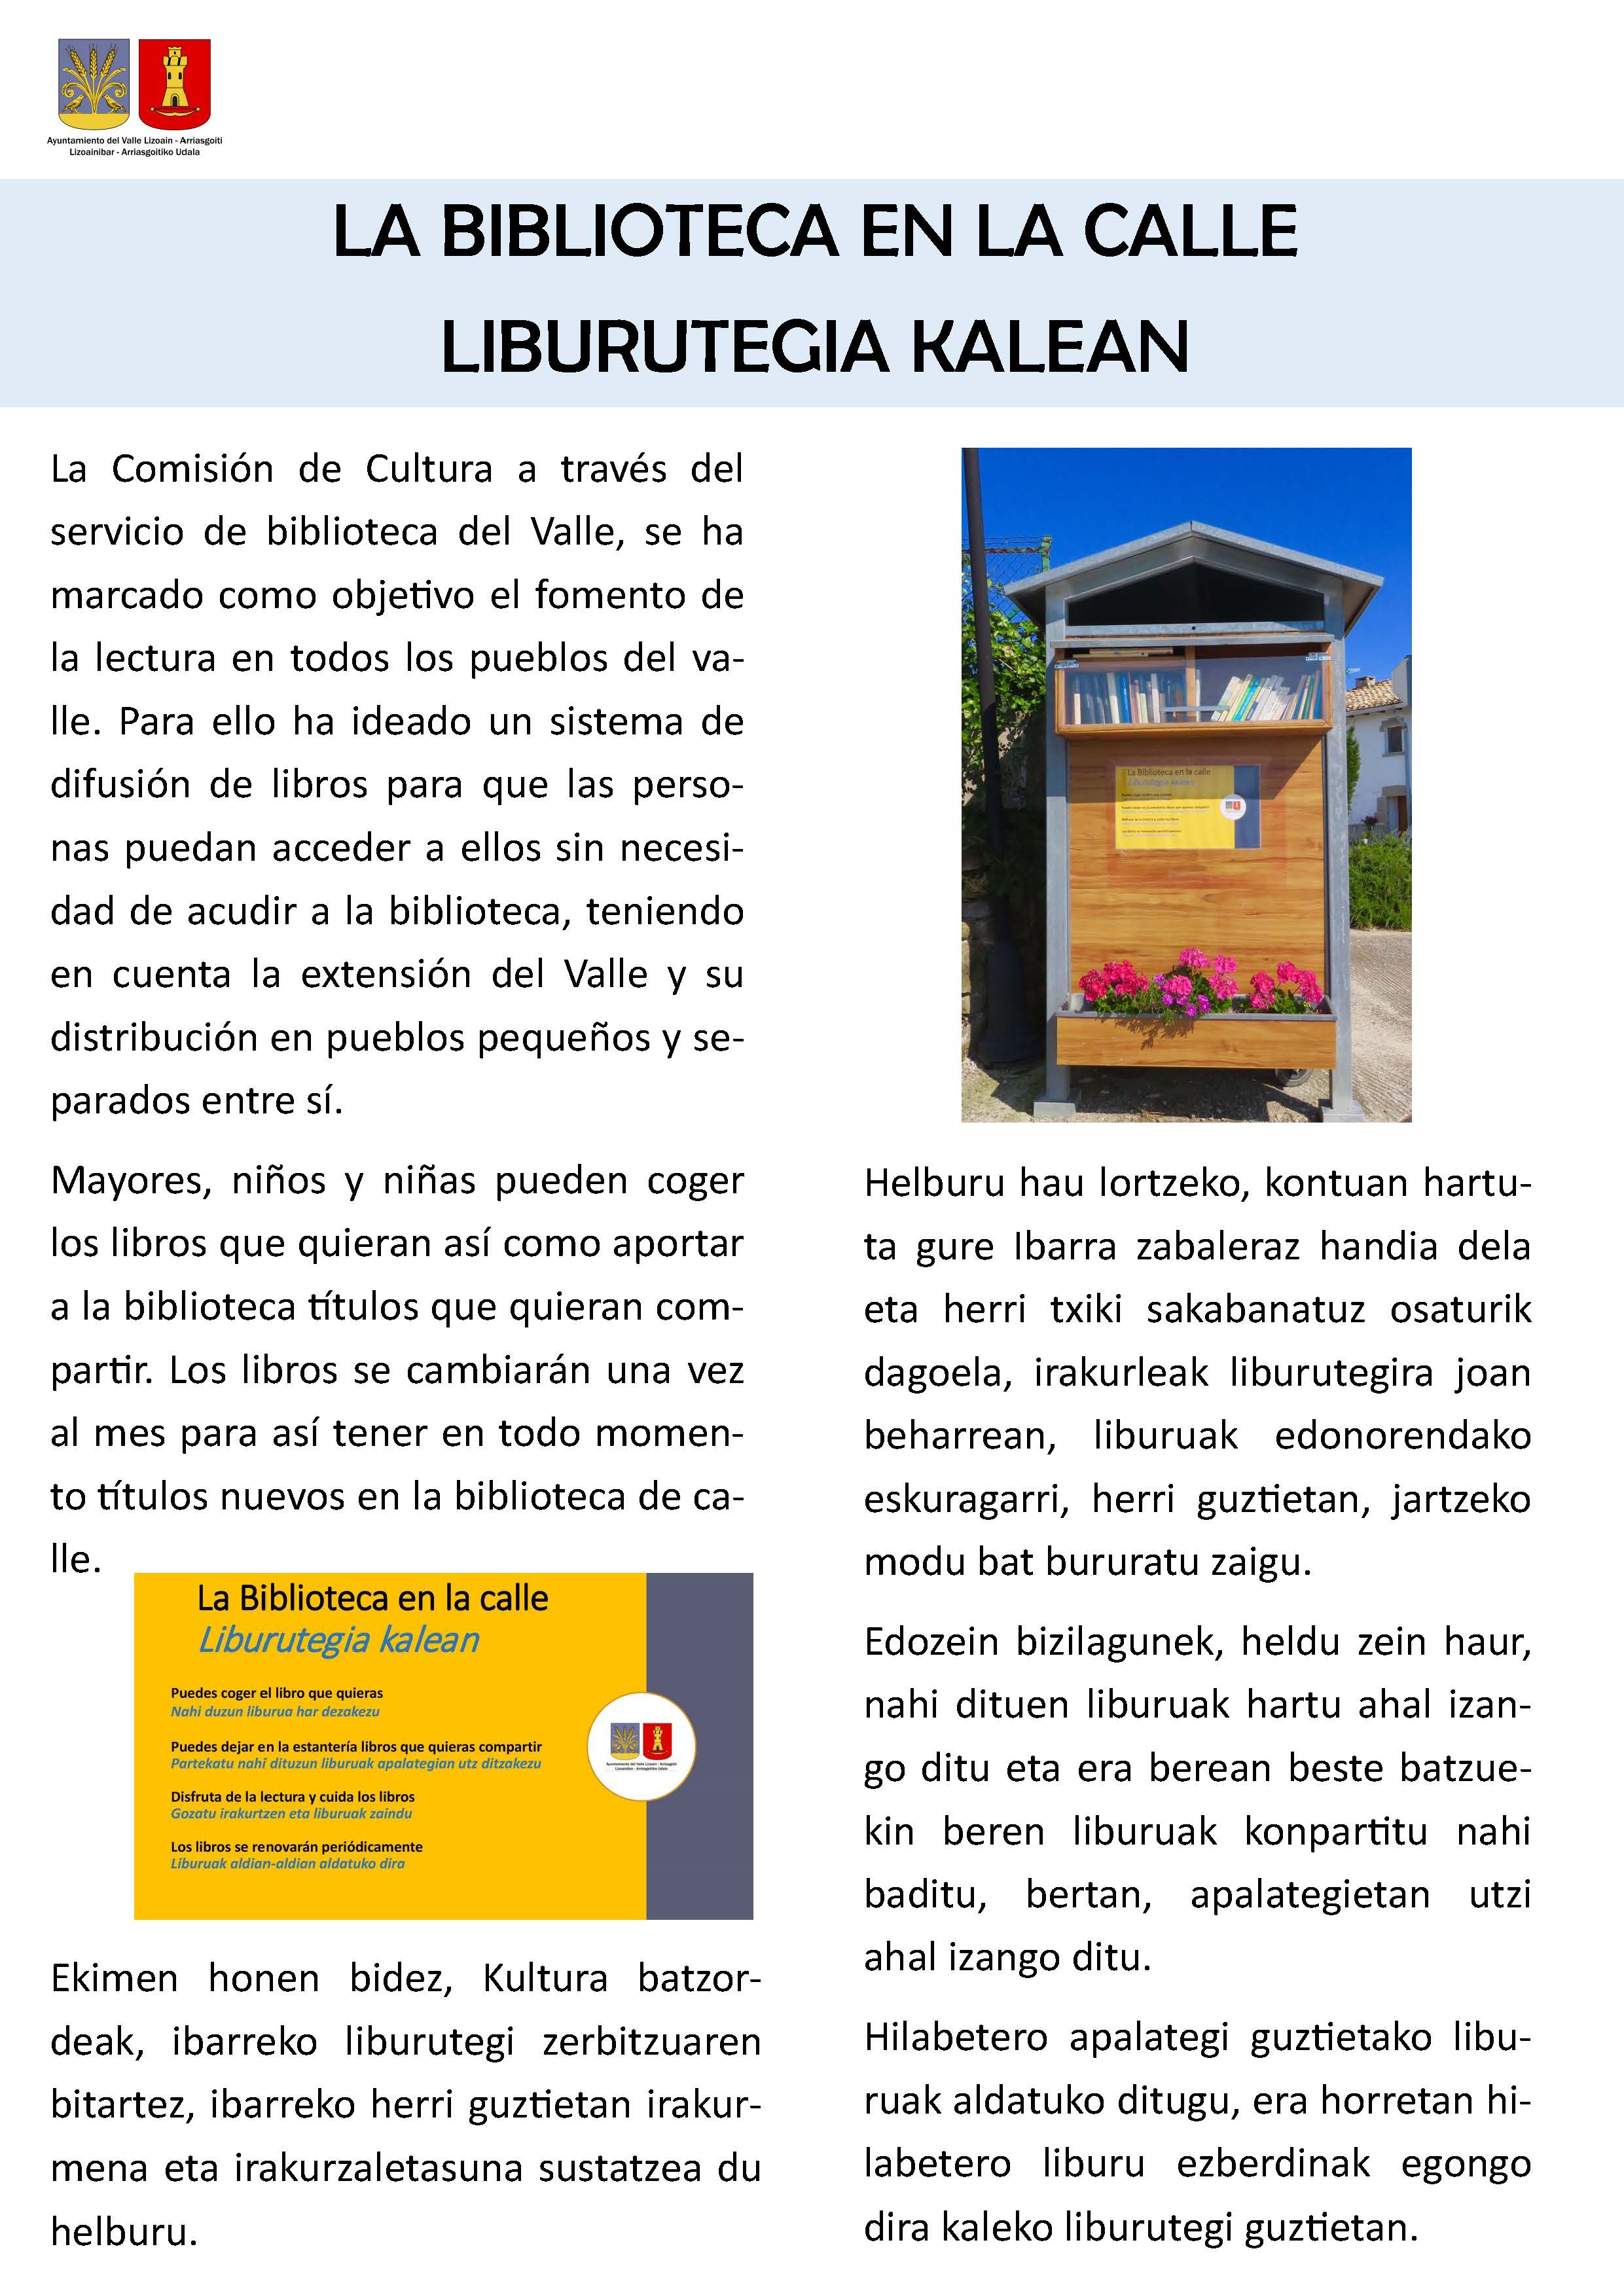 La Biblioteca en las calles de Lizoain-Arriasgoiti/Liburutegia Lizoainibar-Arriasgoitiko kaleetan